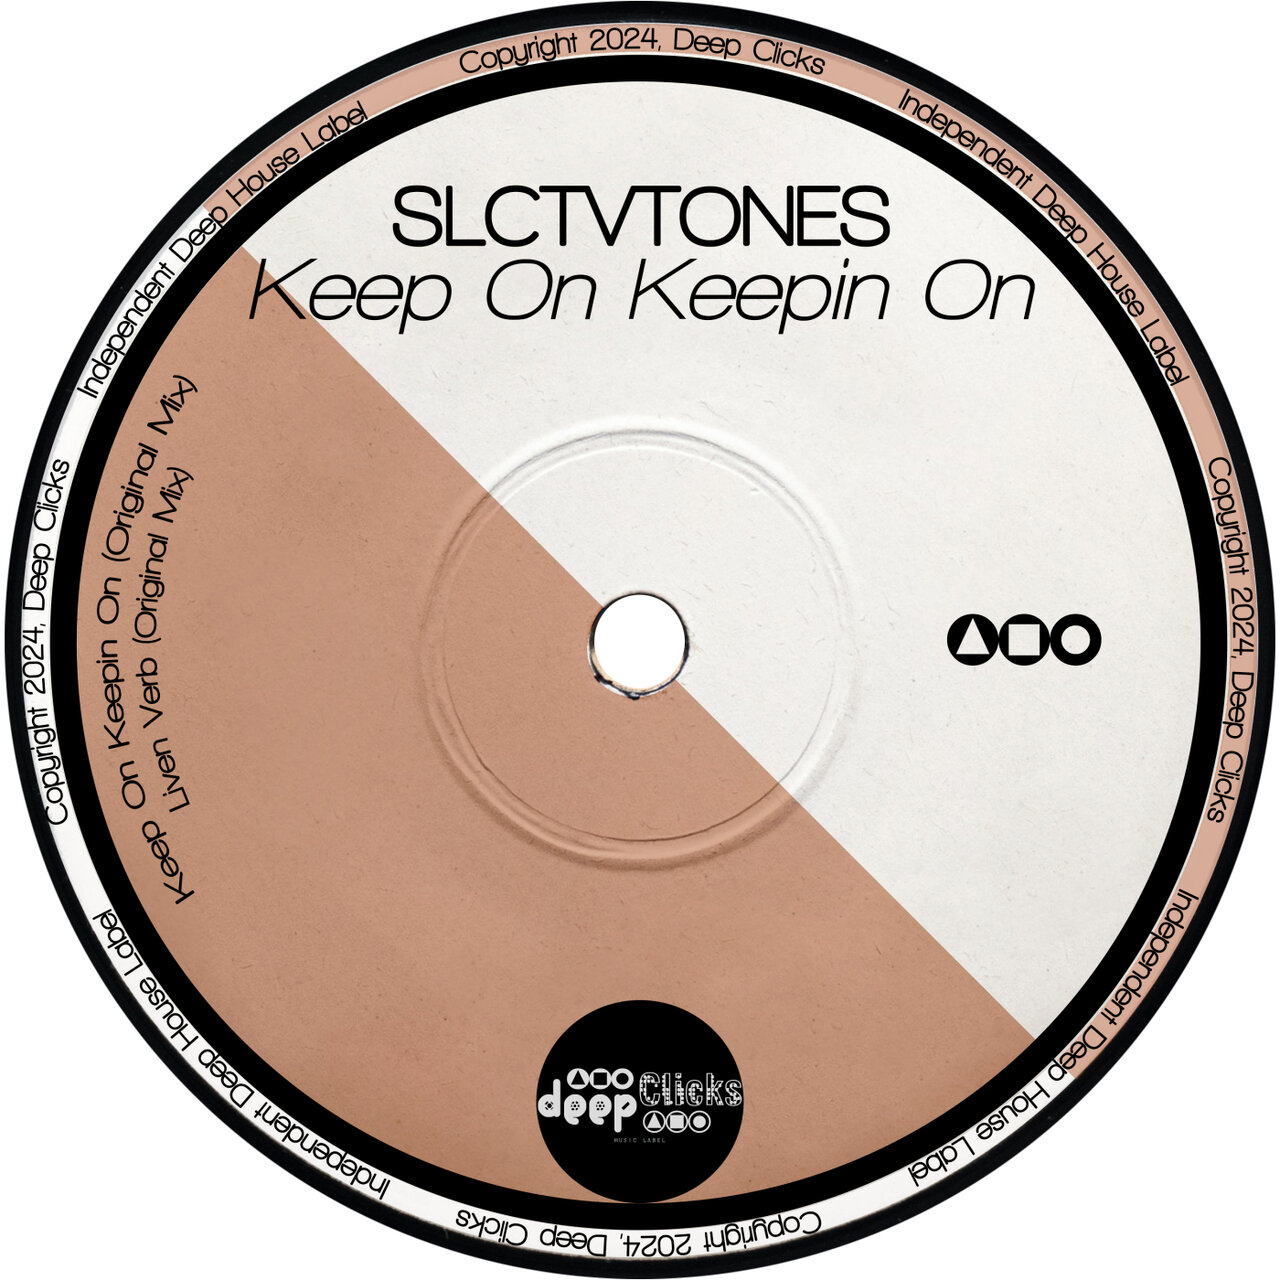 Slctvtones - Keep on Keepin On on Deep Clicks